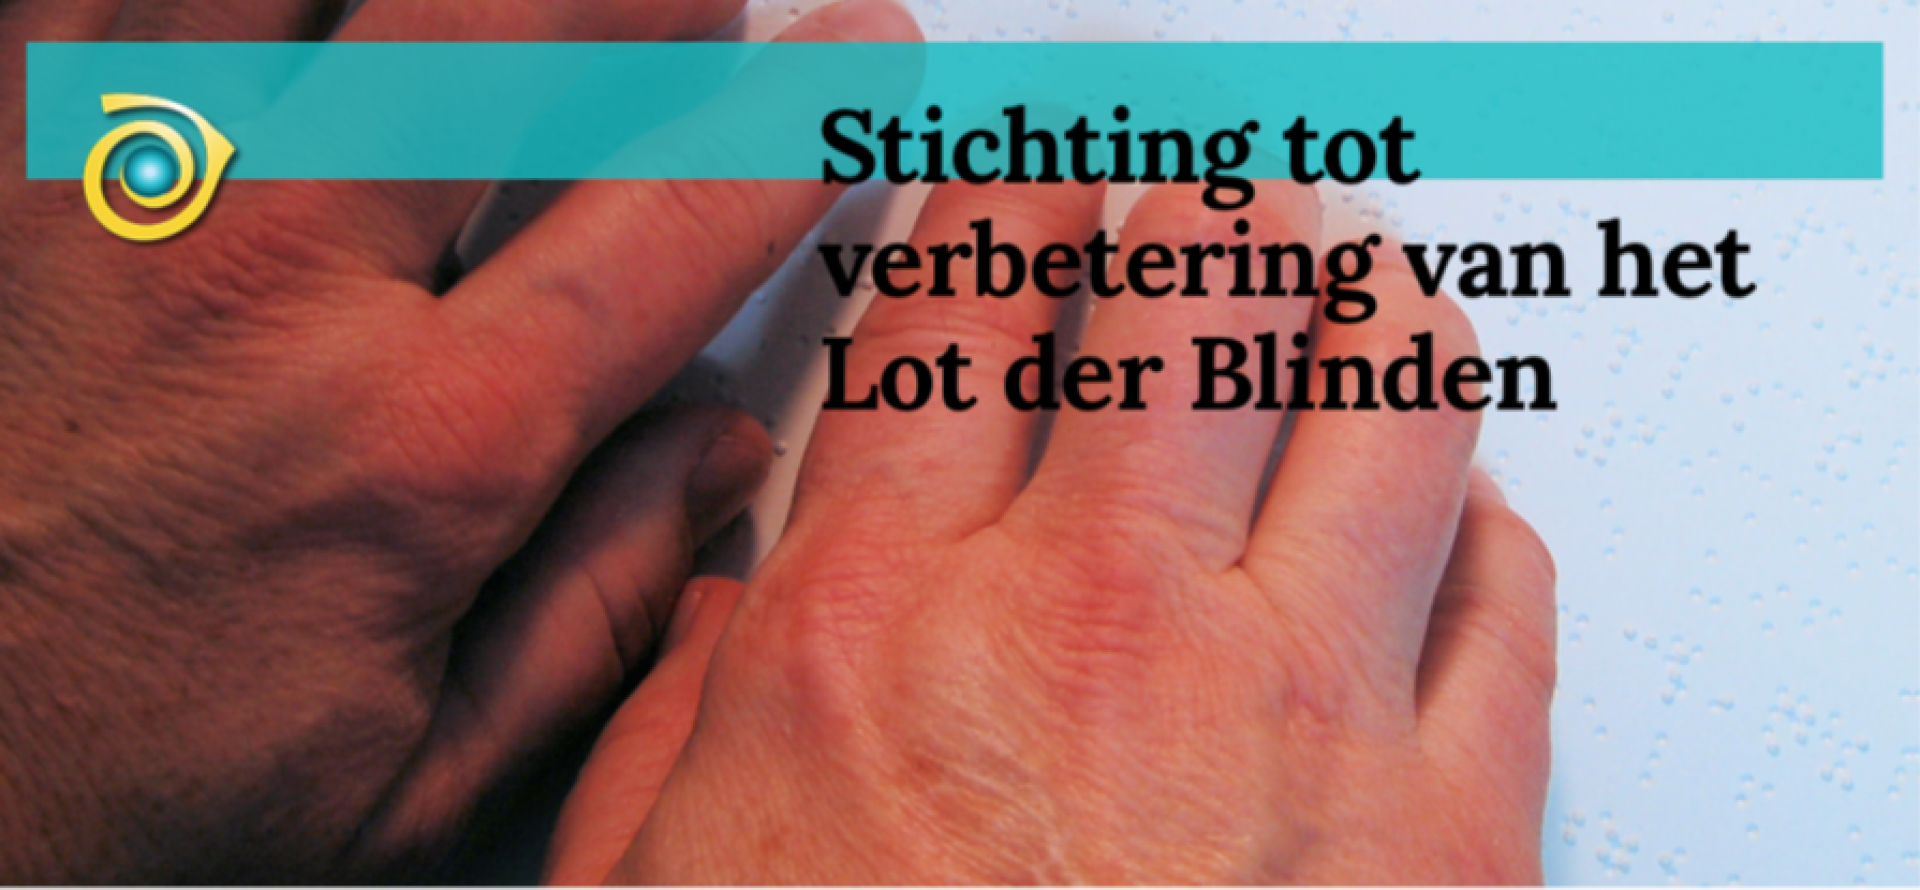 Samenwerking met Stichting tot verbetering van het Lot der Blinden